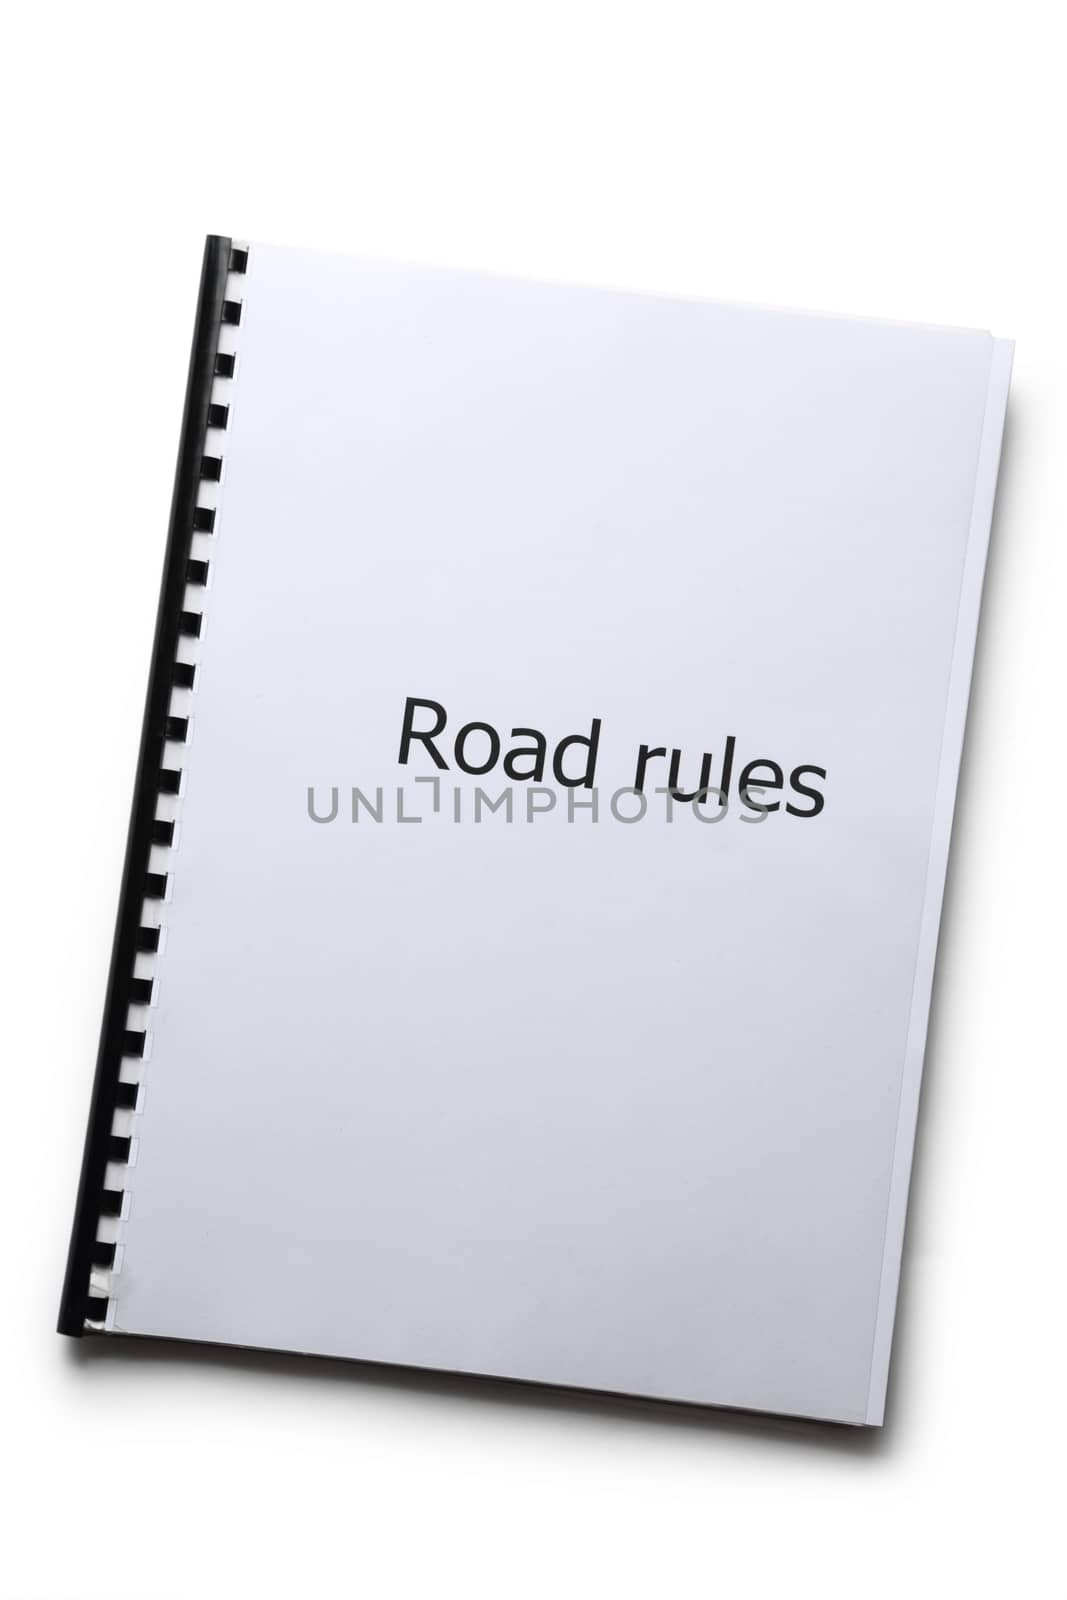 Road rules register on white